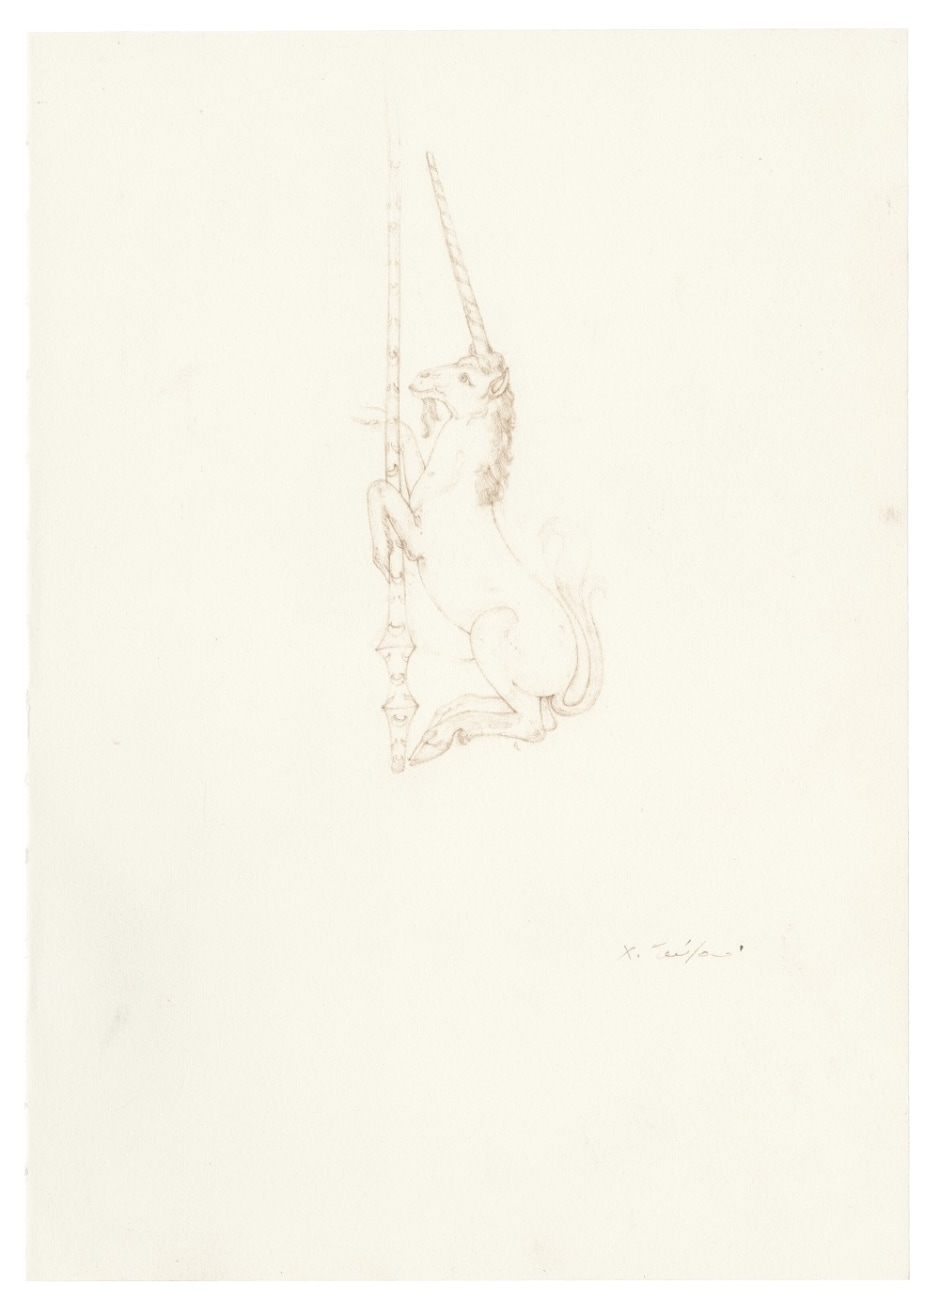 Small licorne, 2015  colour pencil on paper  site size: 29.6 x 21 cm / 11 ⅝ x 8 ¼ in